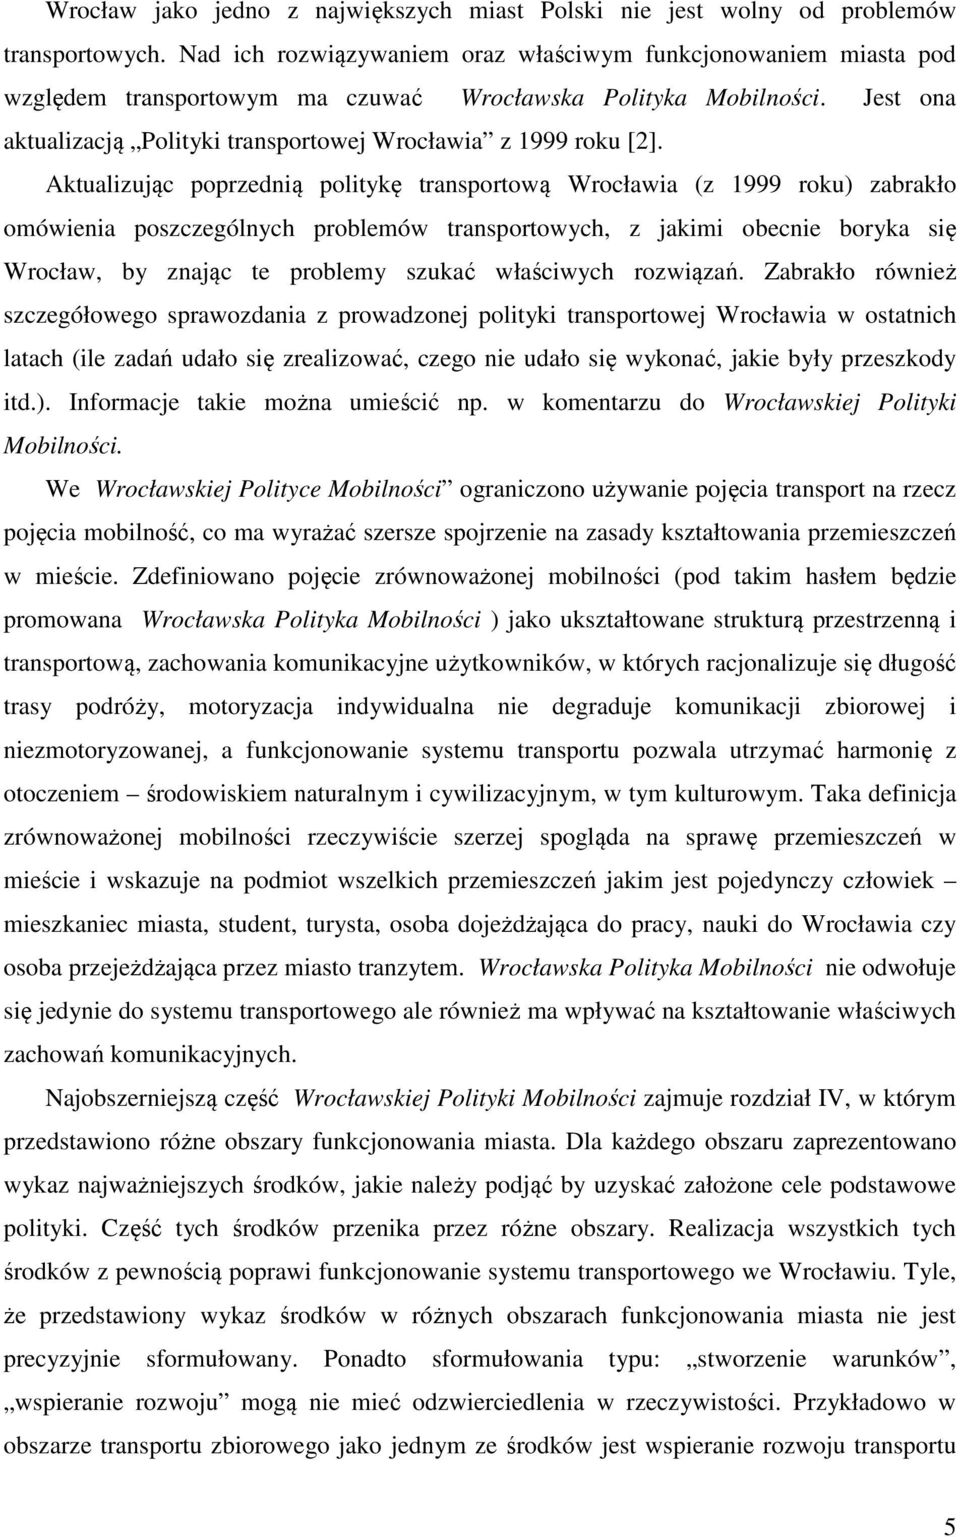 Jest ona aktualizacją Polityki transportowej Wrocławia z 1999 roku [2].